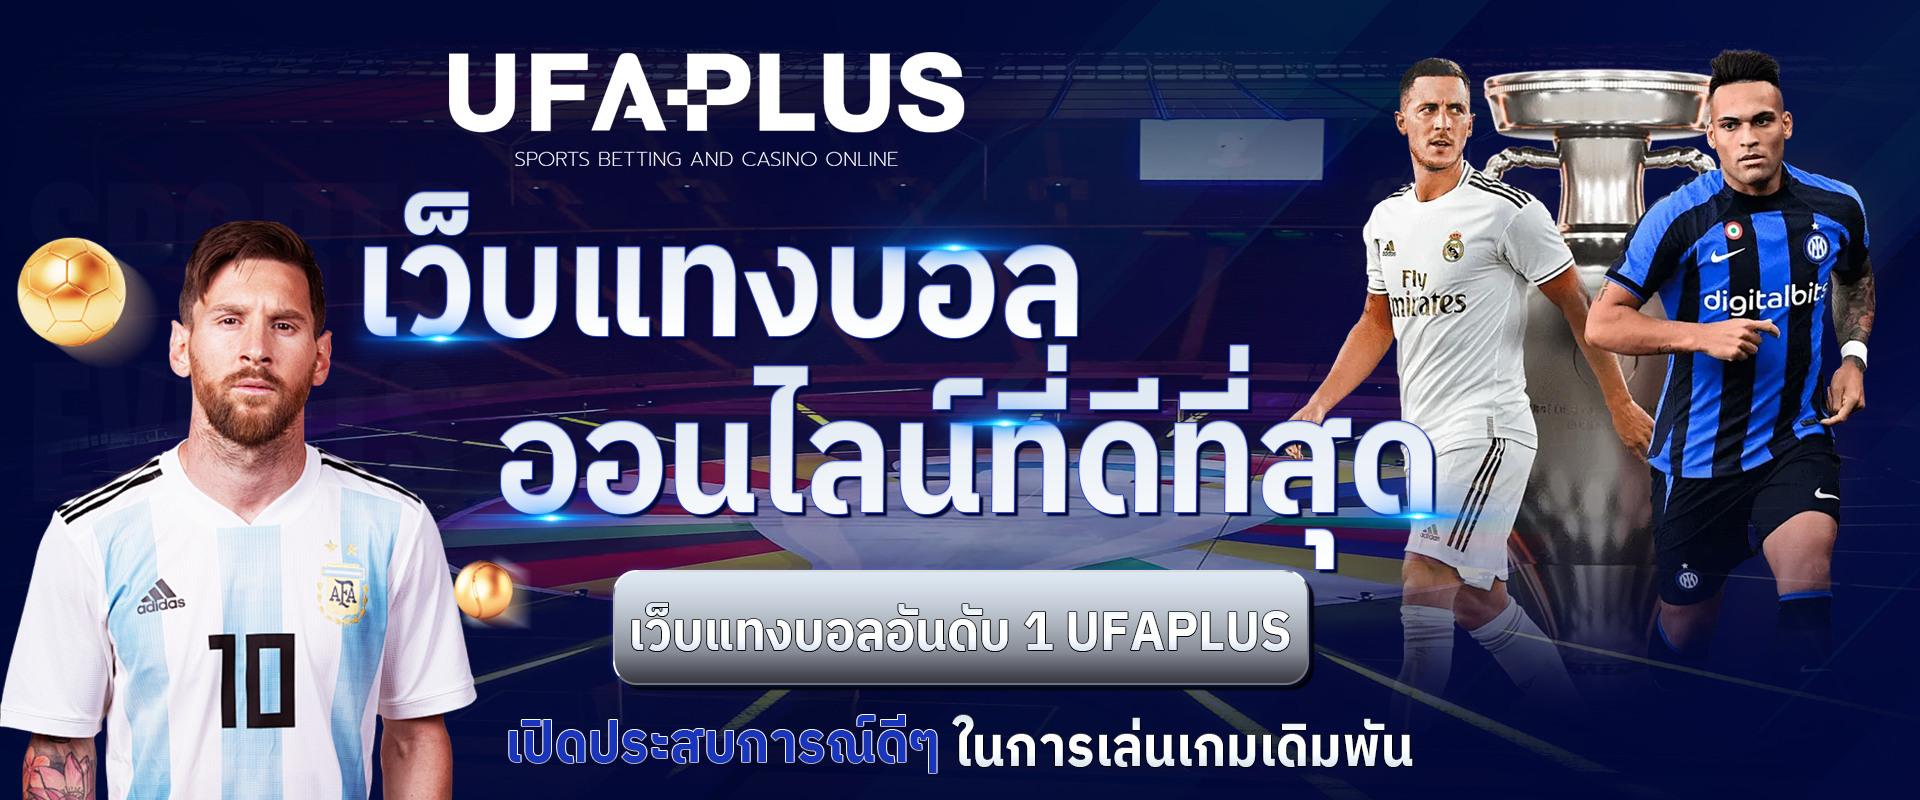 UFAPLUS เว็บแทงบอลออนไลน์ที่ดีที่สุด